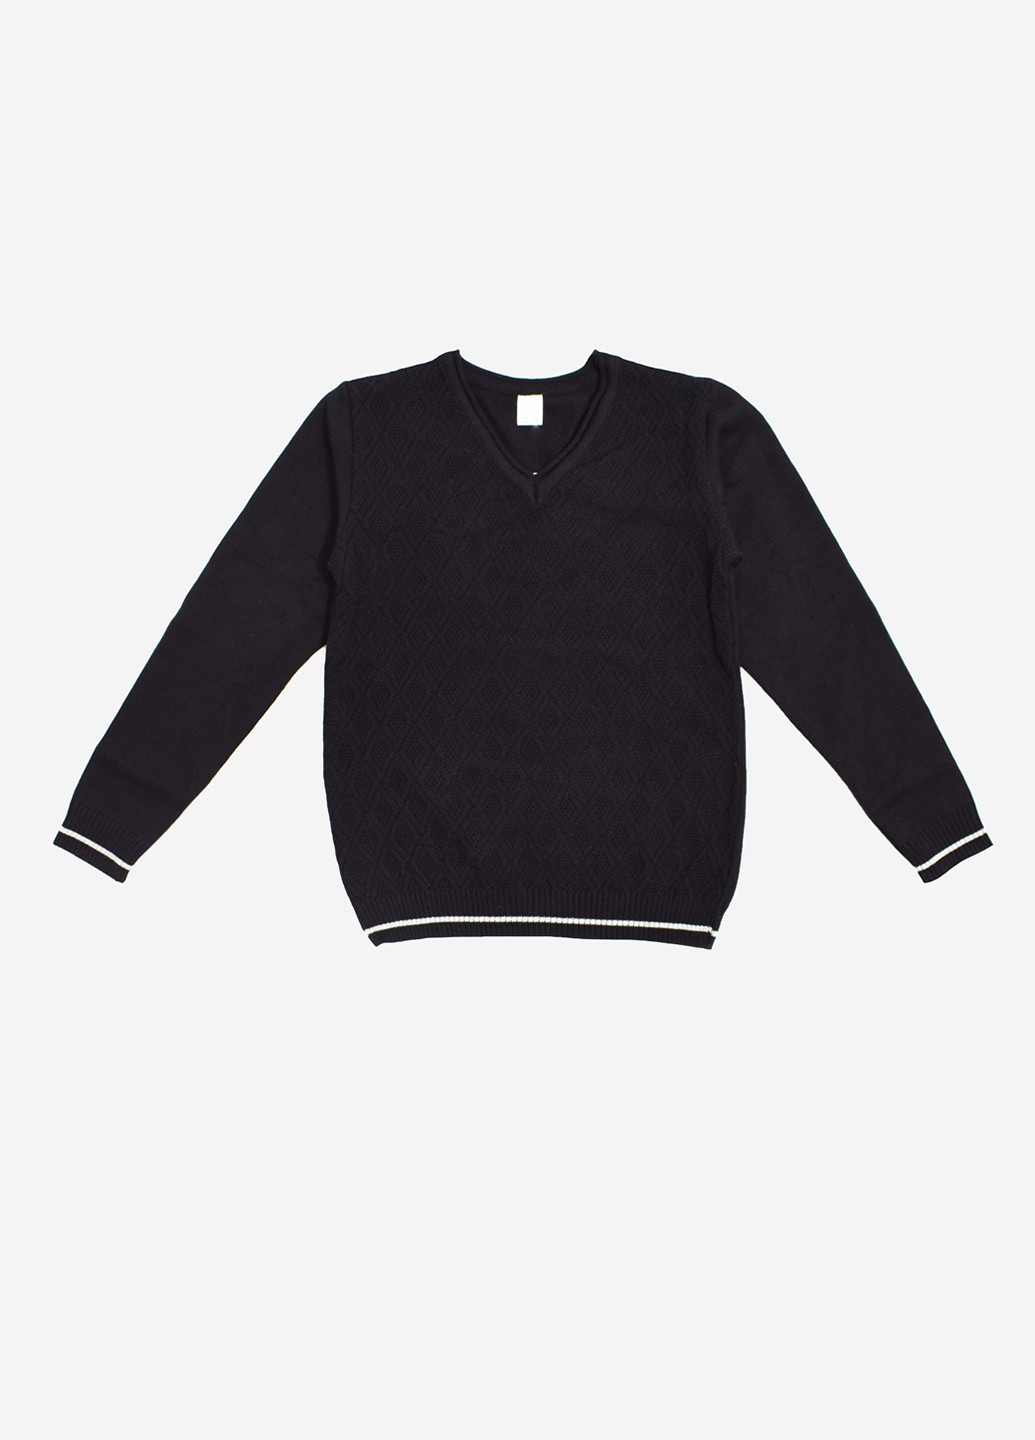 Черный демисезонный пуловер пуловер Фламинго